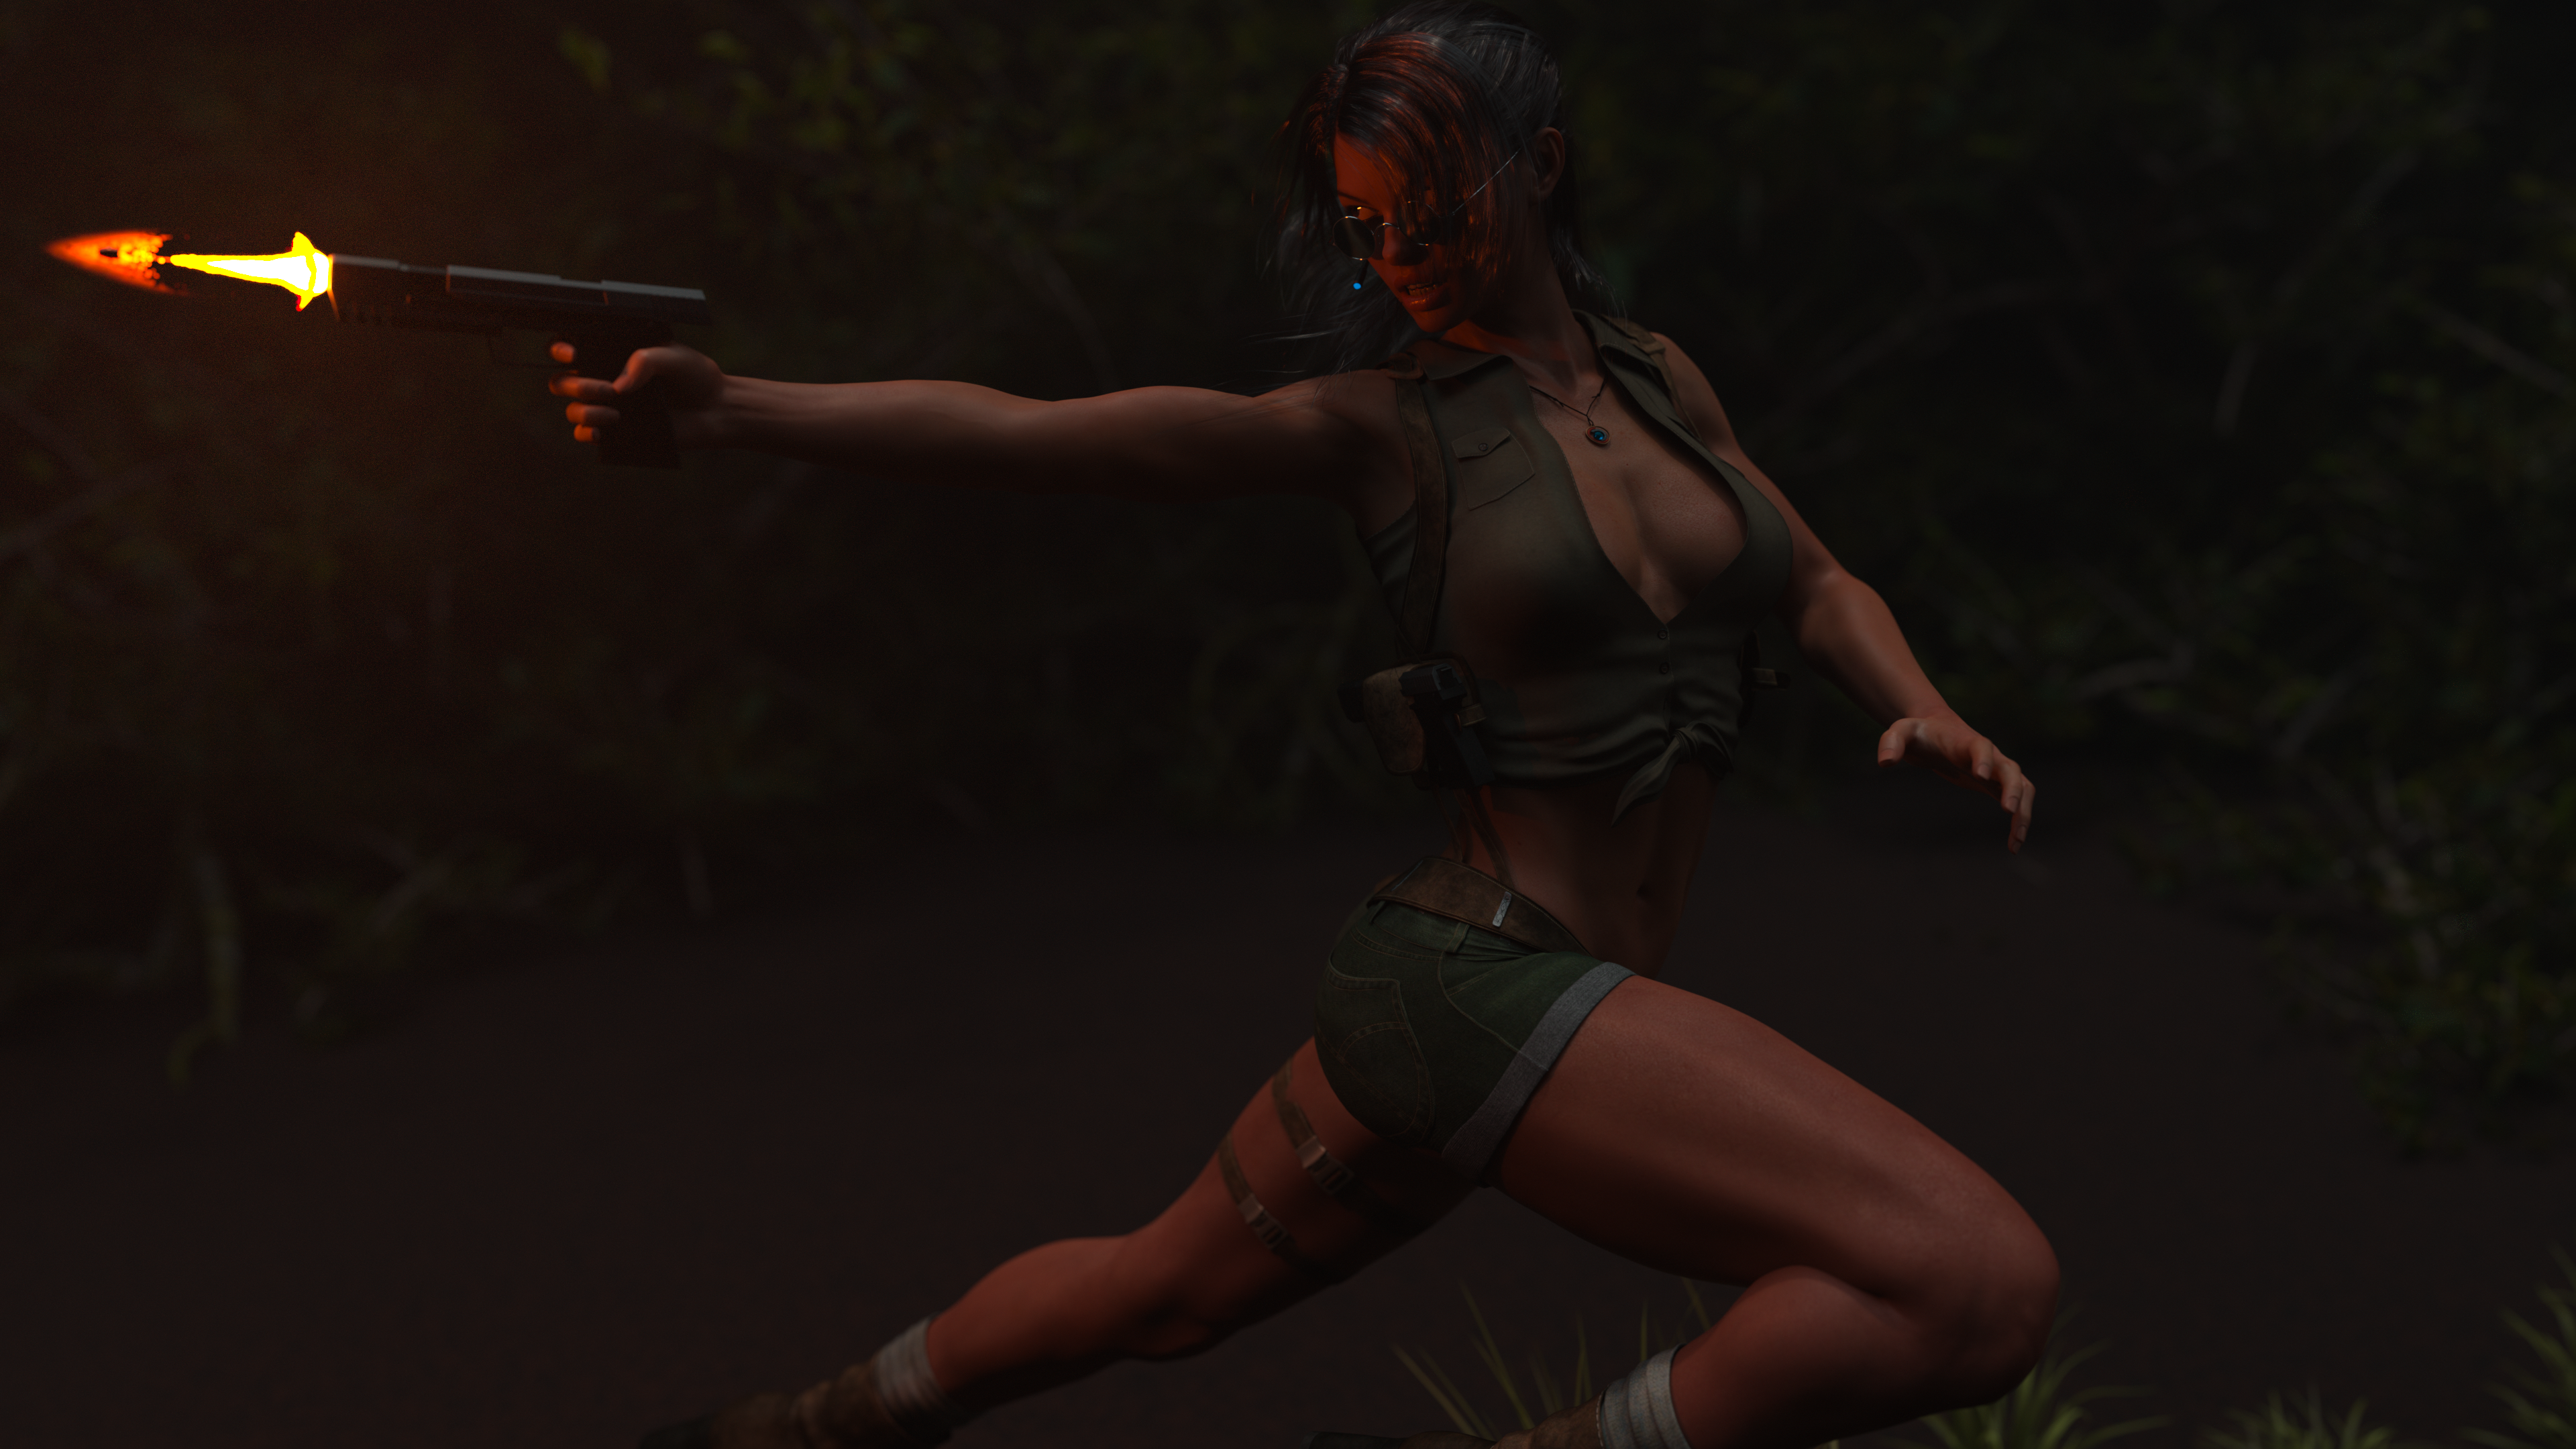 Lara shooting at something